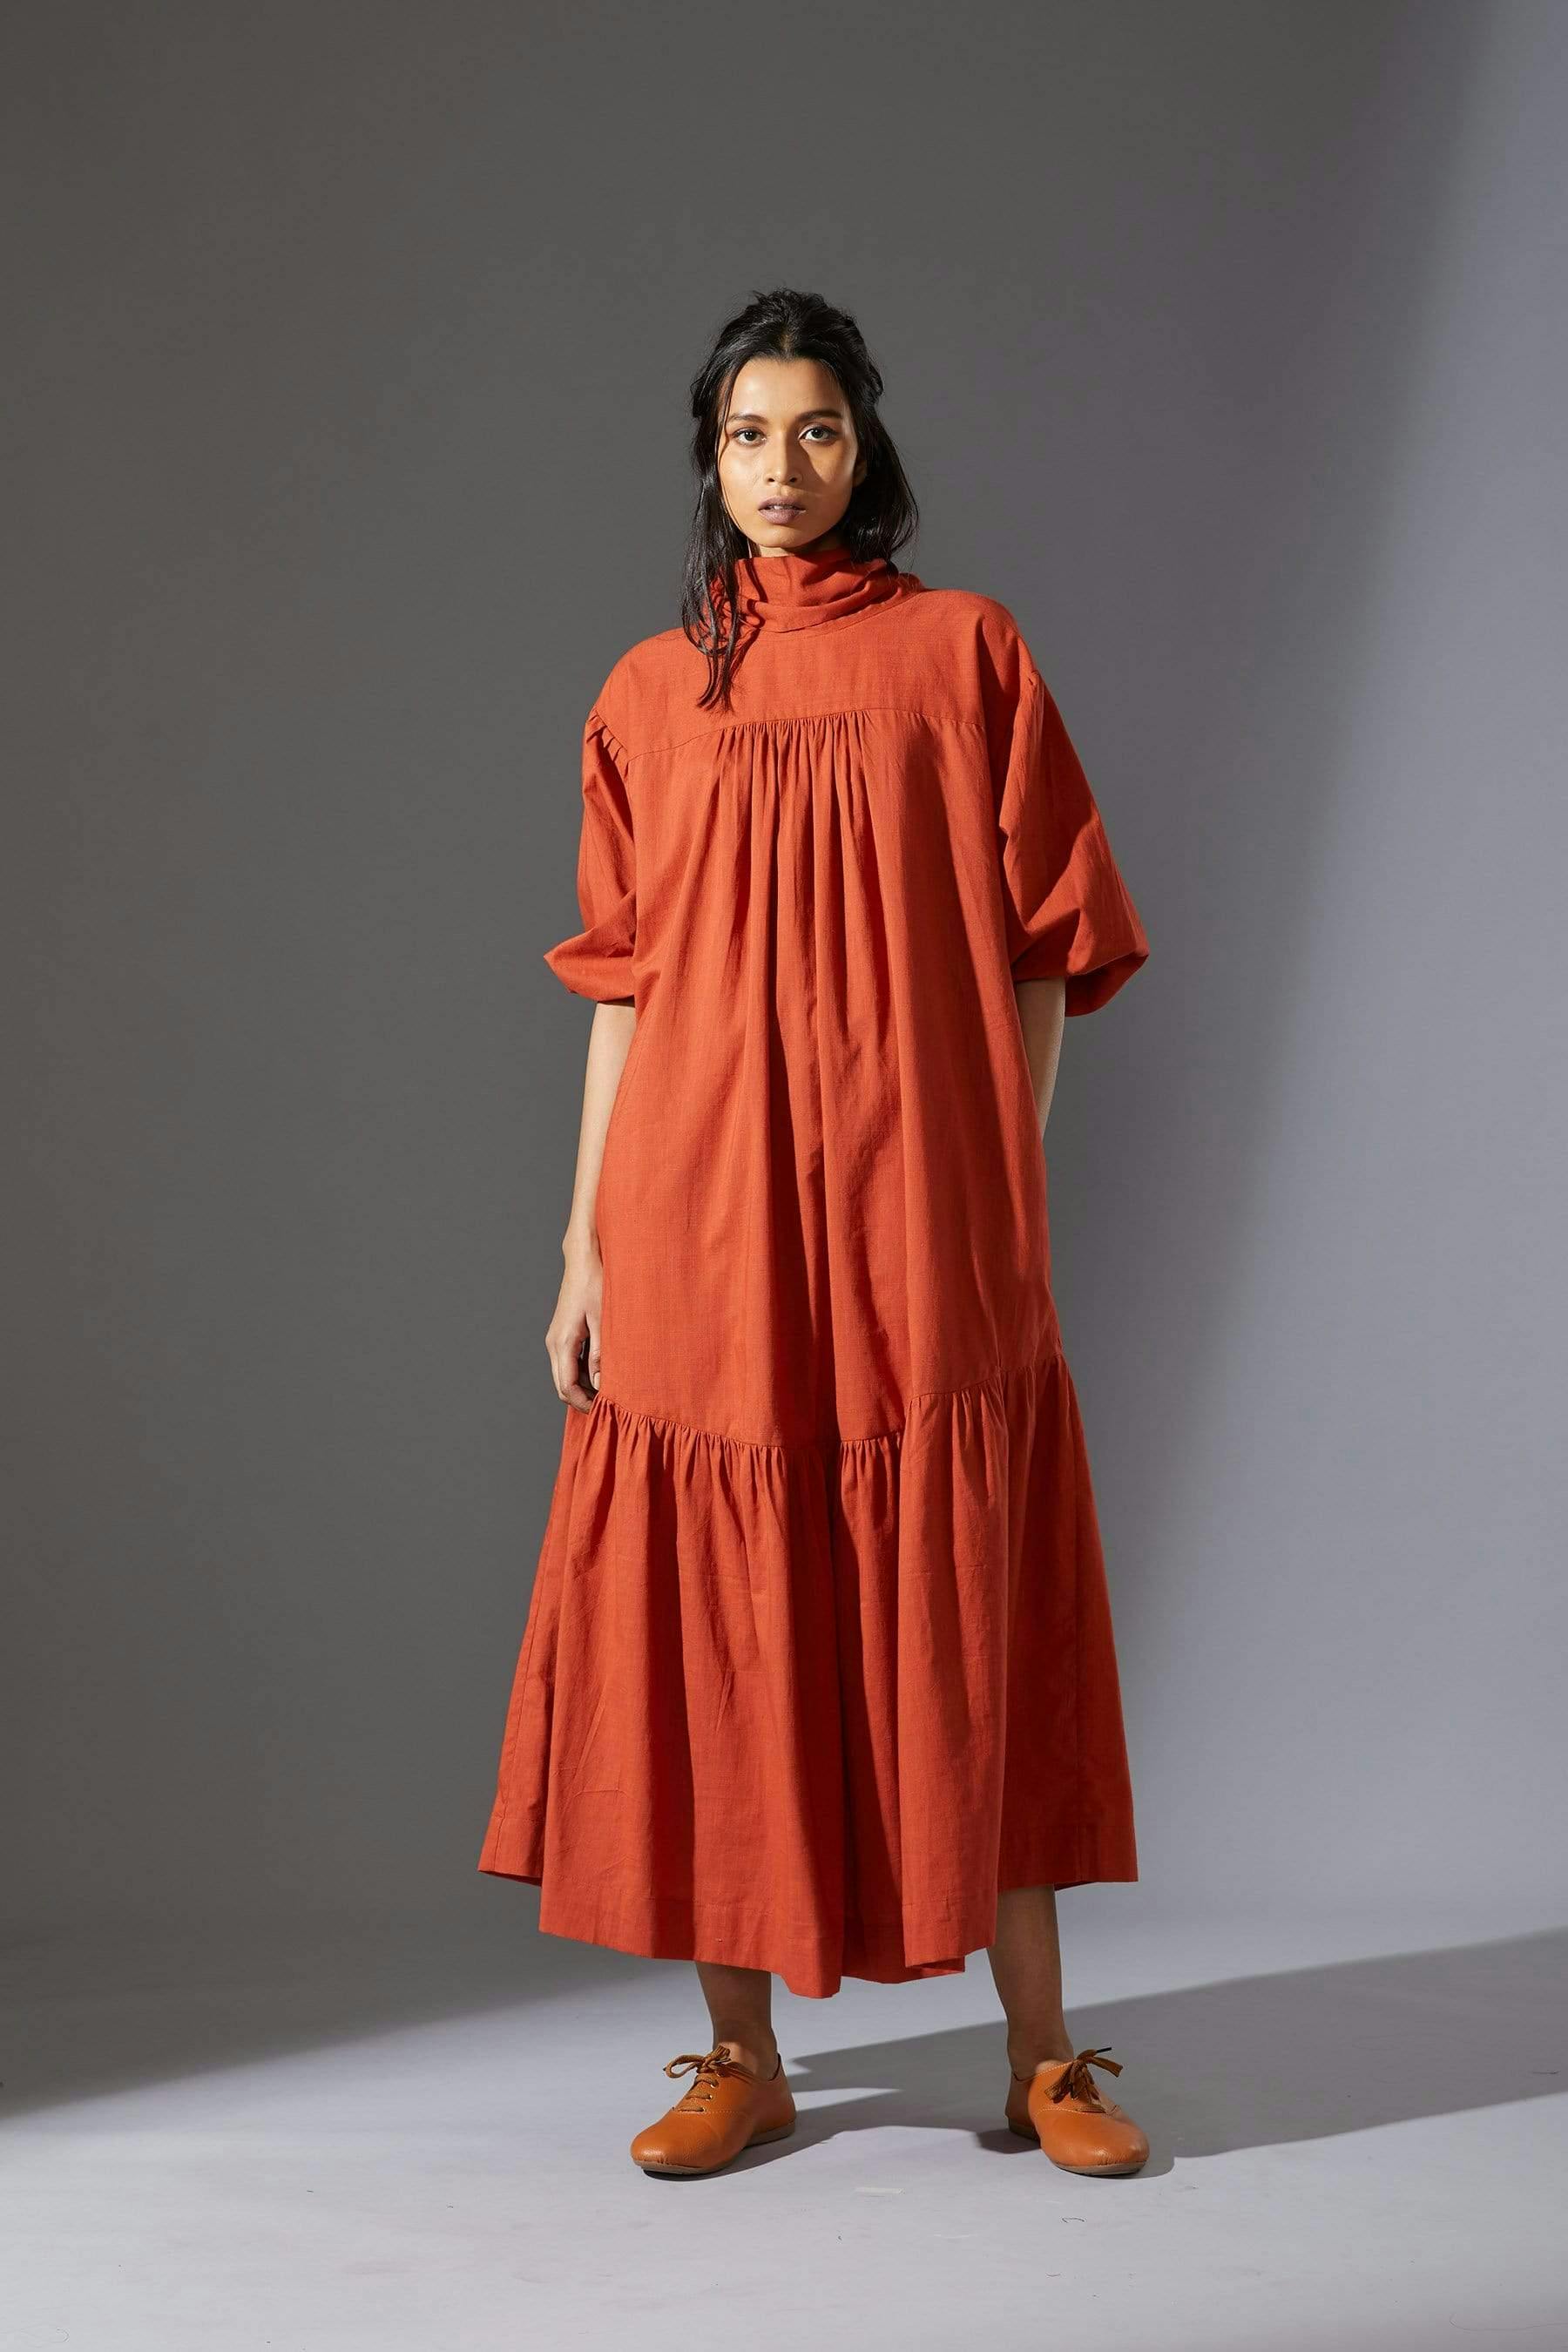 Mati New Praci Rust Dress, a product by Style Mati